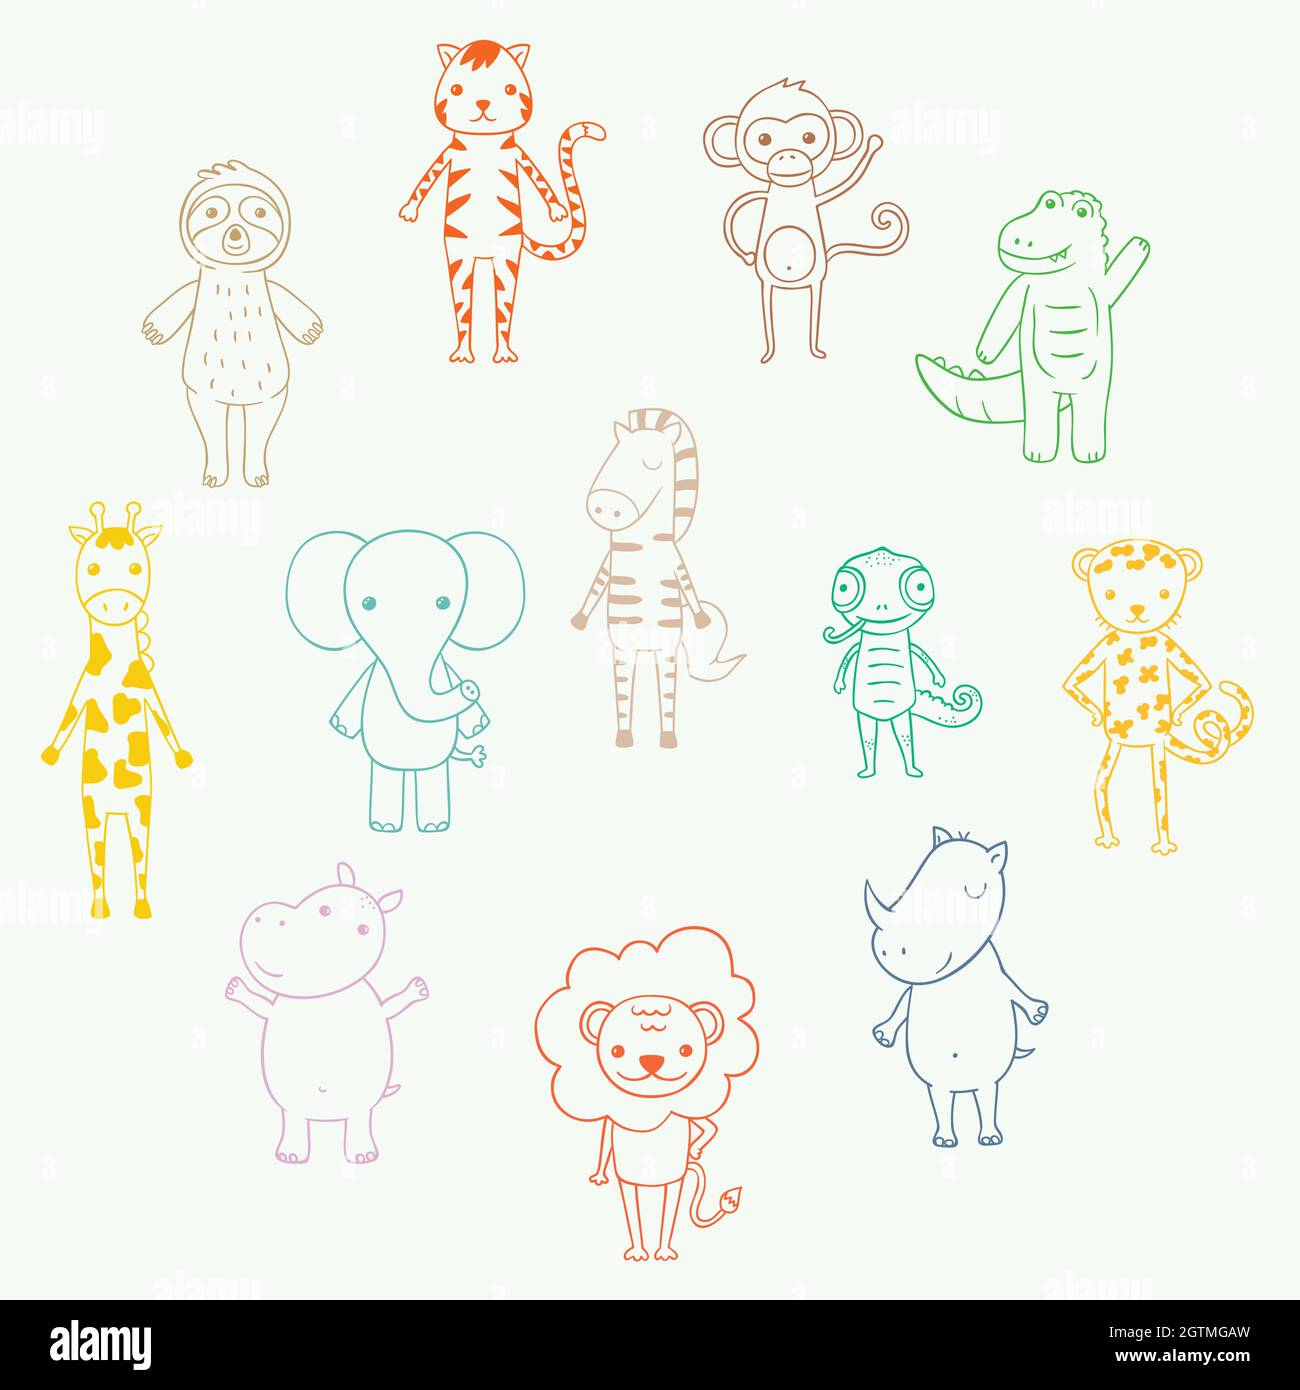 Animaux de la jungle et safari mignons. Personnages du zoo de dessins animés dessinés à la main. Éléphant, lion, cloth, singe, zèbre, girafe. Contour coloré. Illustration de Vecteur